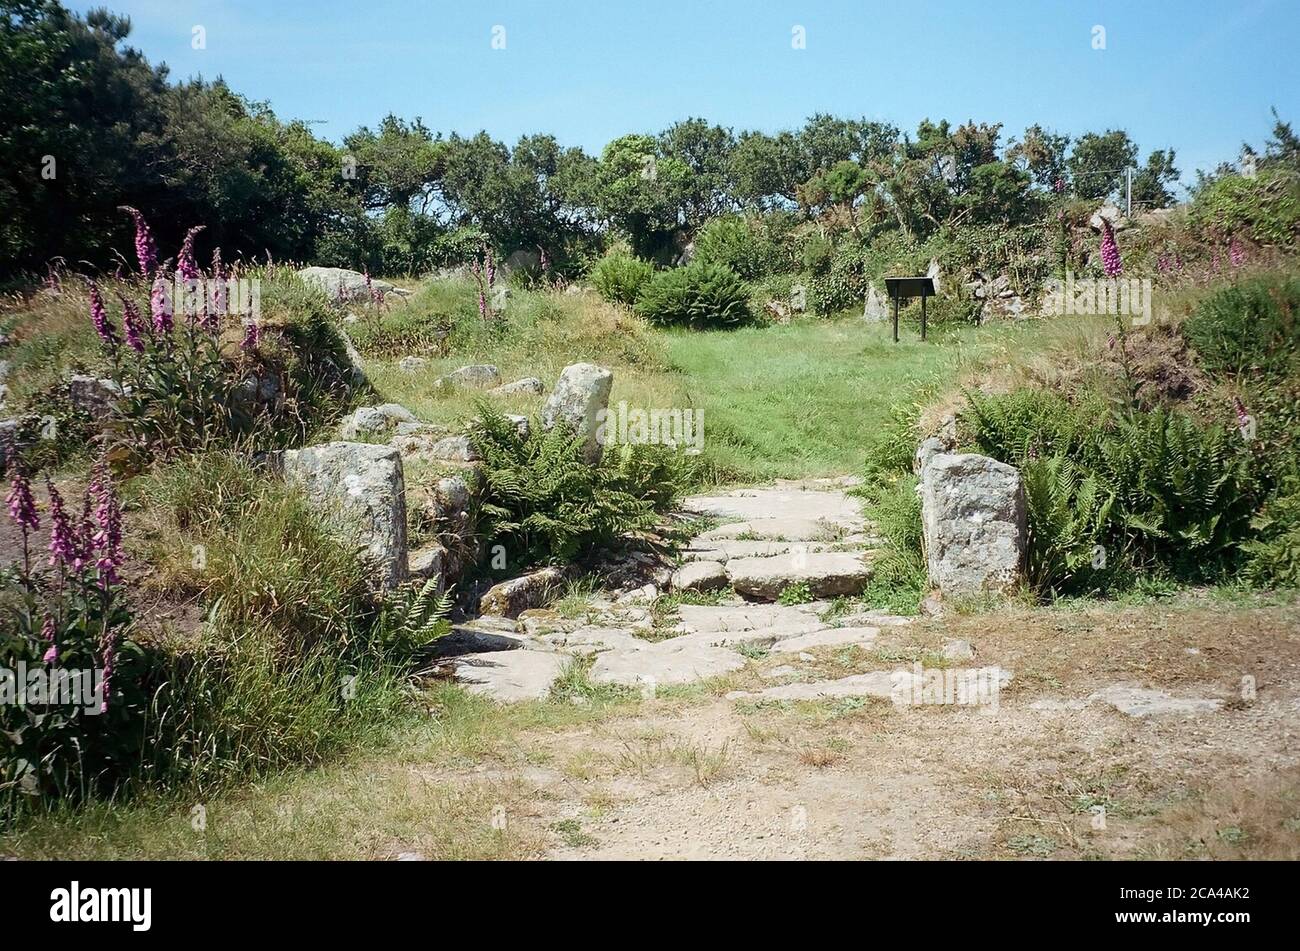 Carn Euny Ancient Iron Age Village, in der Nähe von Sancreed, Cornwall, Großbritannien Stockfoto